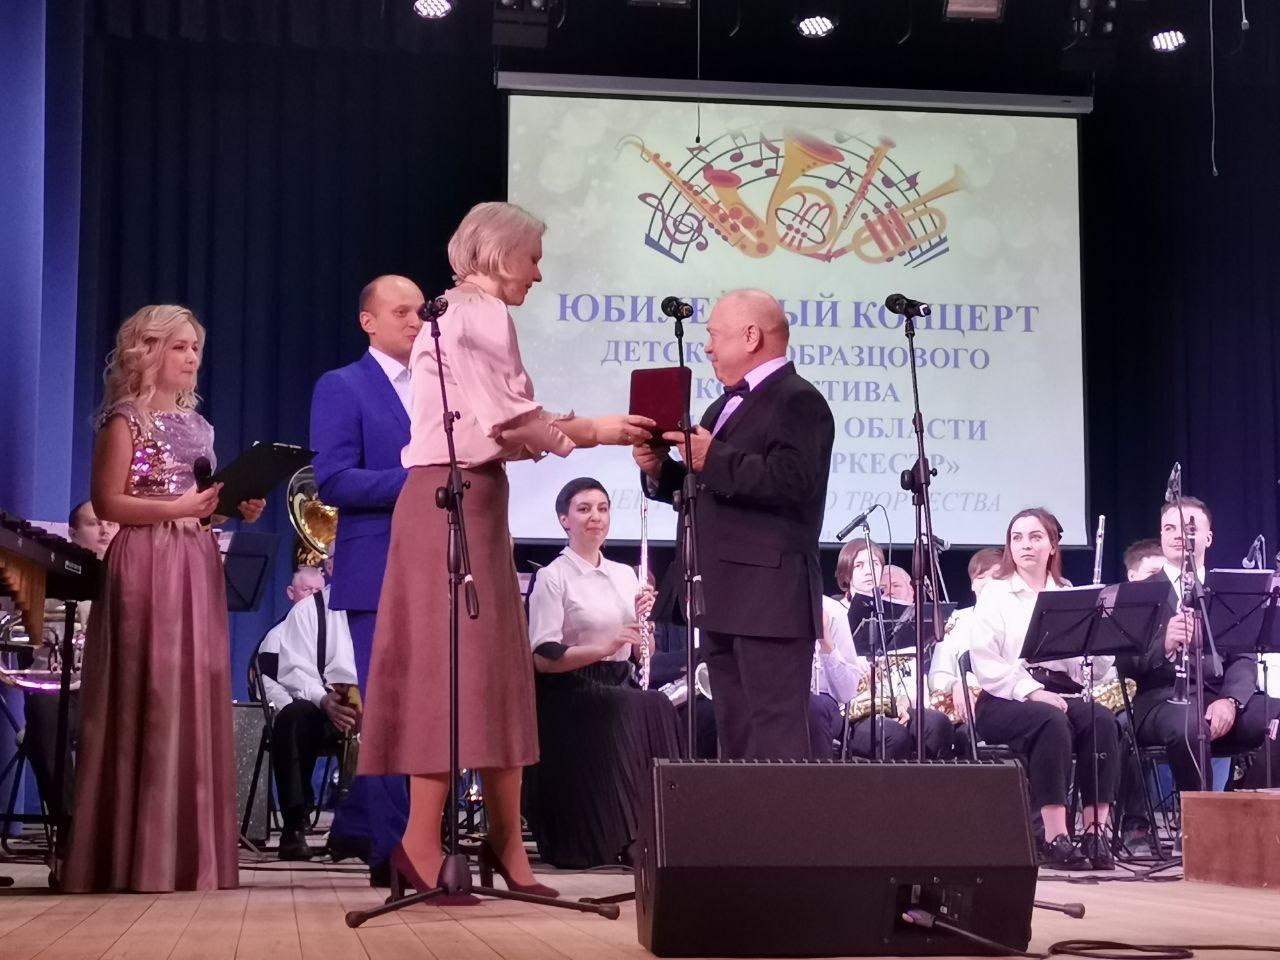 Детский духовой оркестр Городского округа Коломна отметил 45-летний юбилей